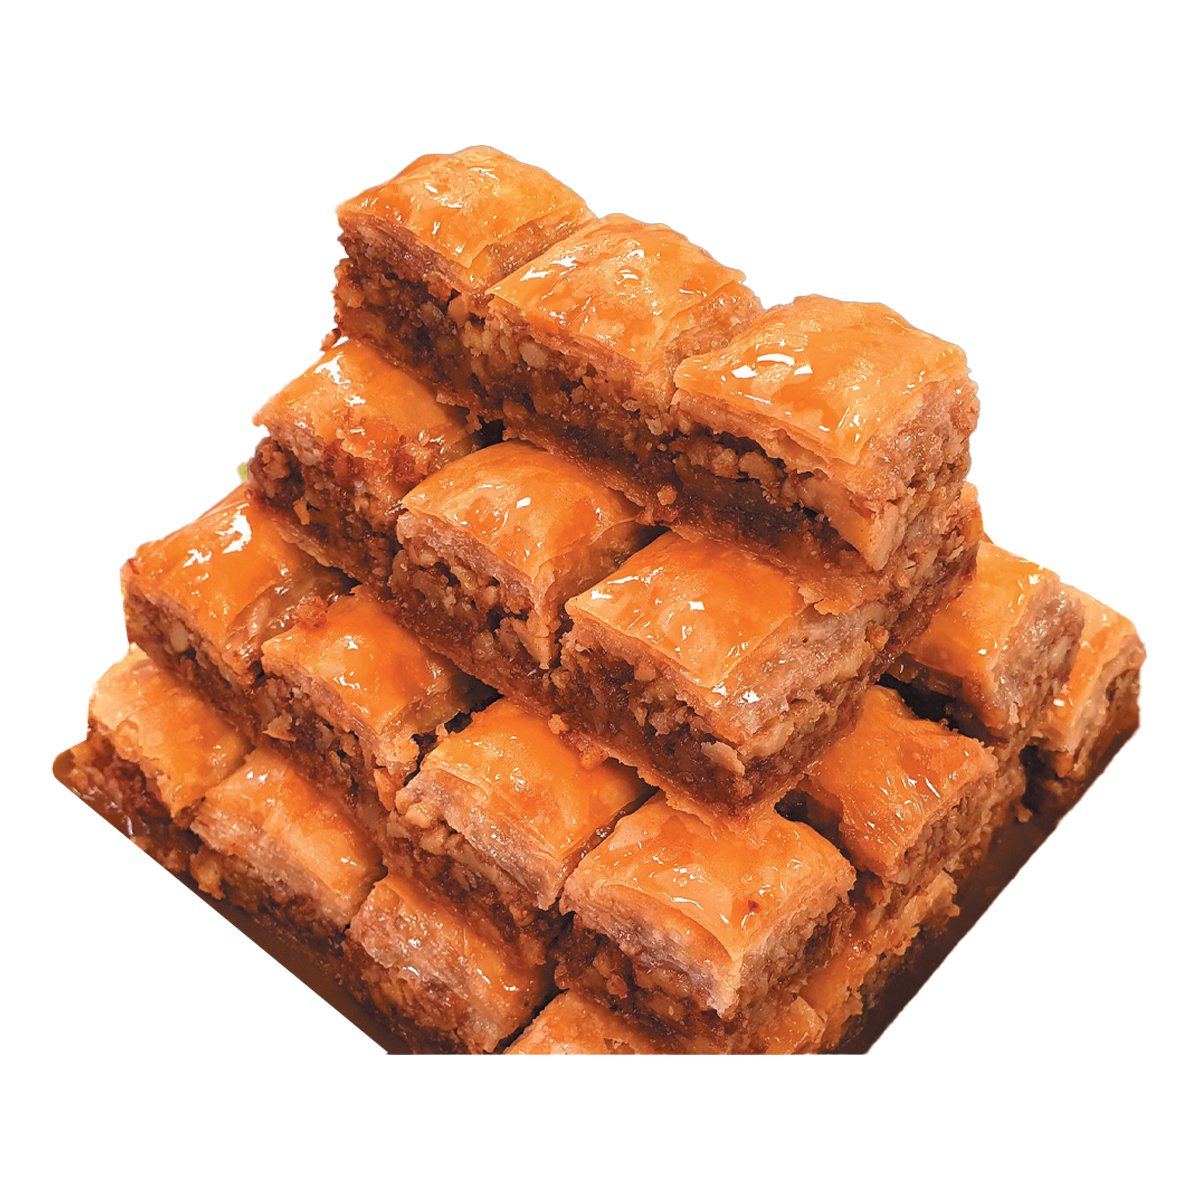 Buy Premium Backlawa Walnut 500 g Online at Best Price | Arabic Sweets | Lulu UAE in UAE